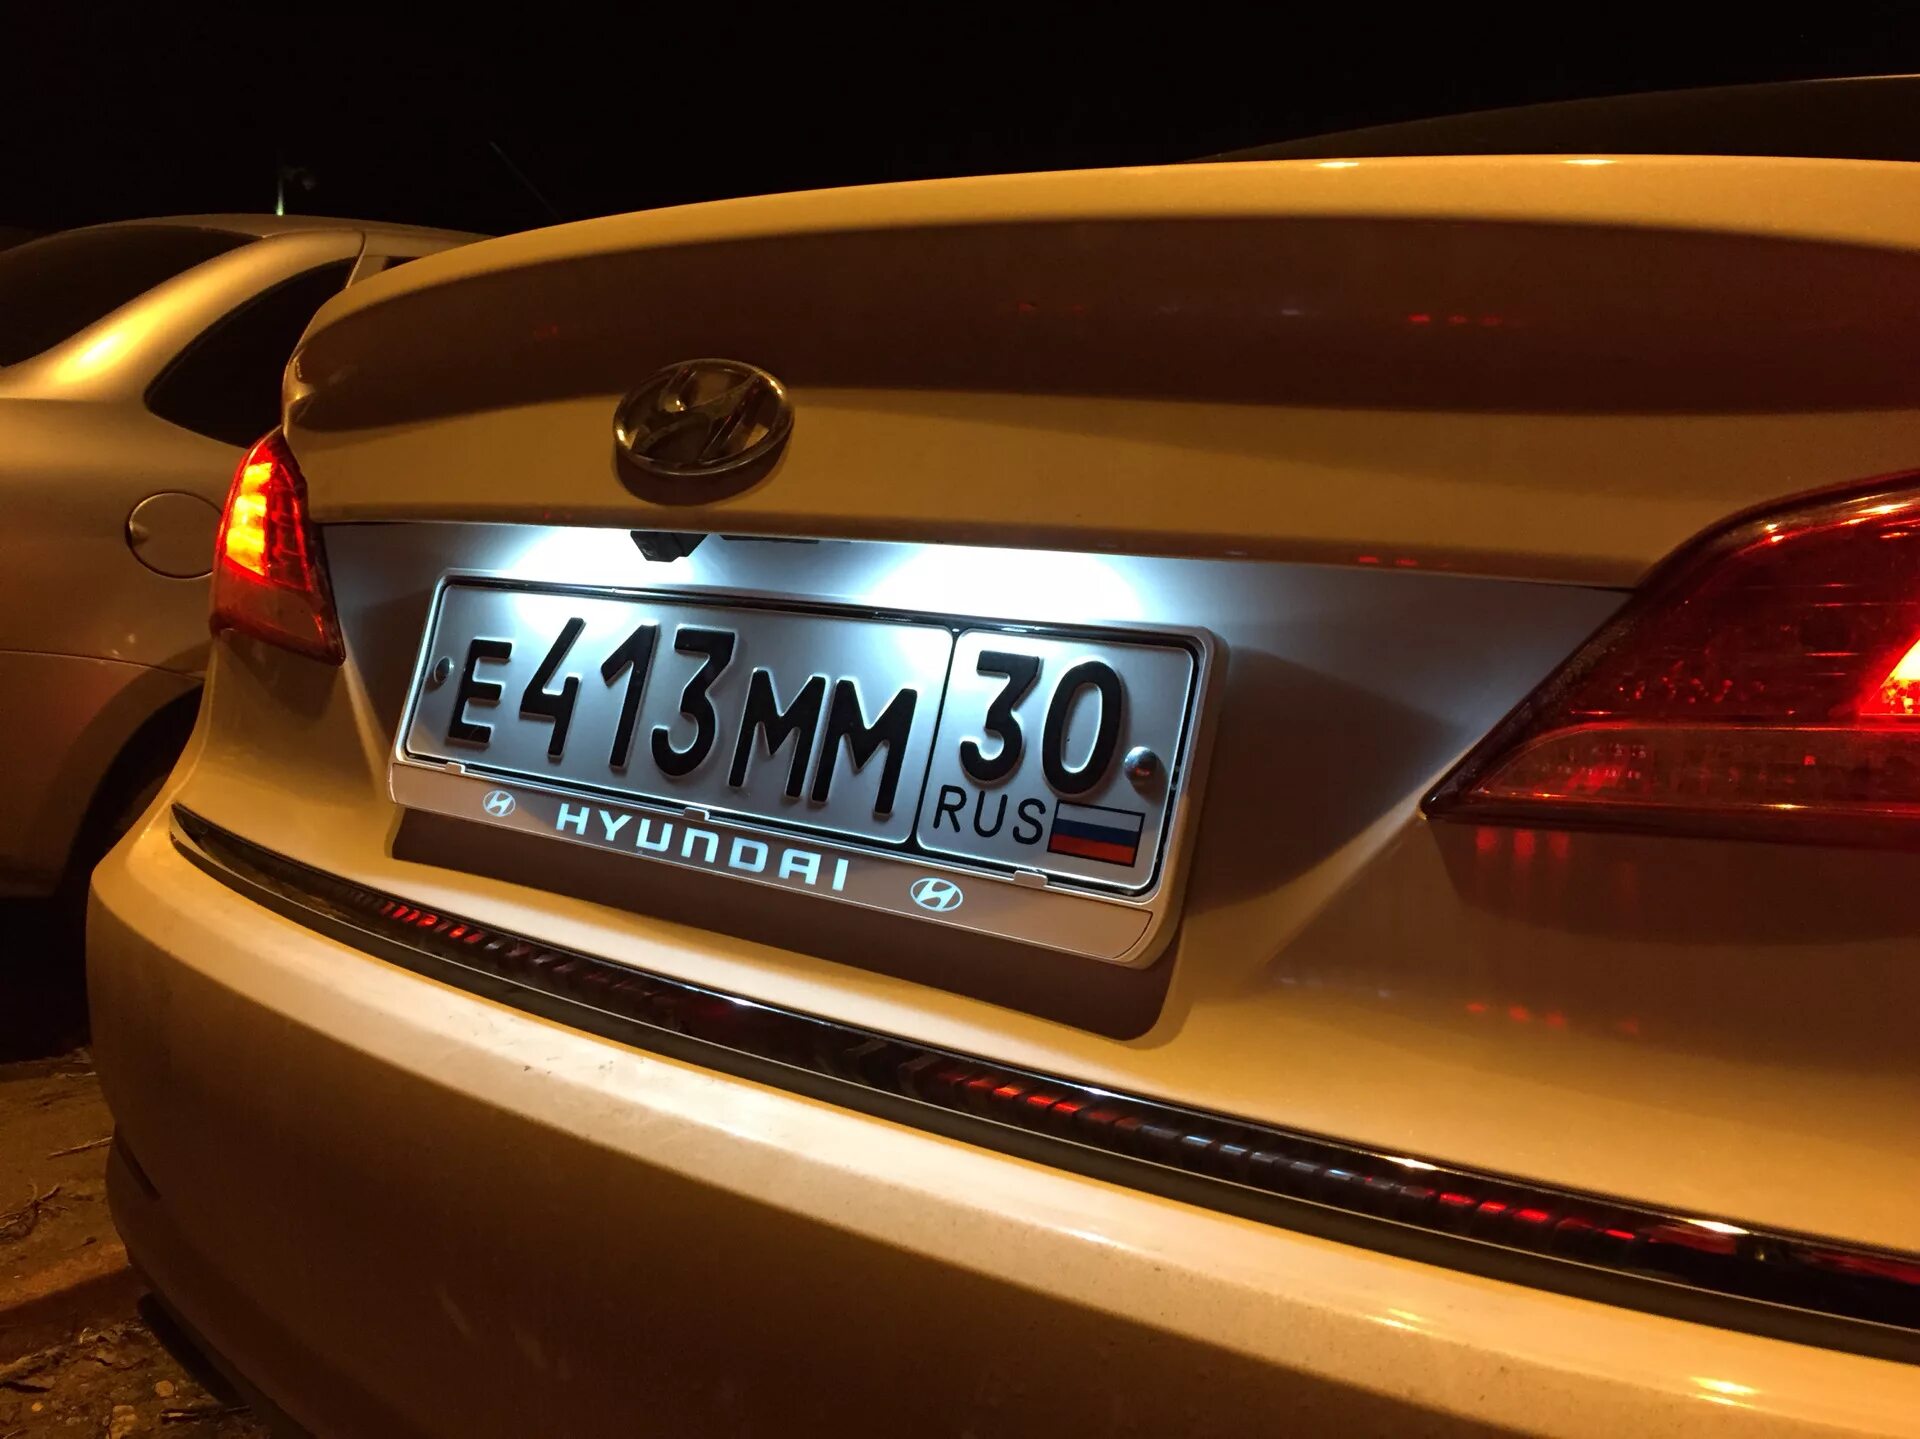 Номерные рамки Hyundai. Номерная рамка для Хендай Hyundai Солярис. Hyundai рамка номерного знака. Лампочки номерного знака на Hyundai i40. Рамка для автомобиля с подсветкой